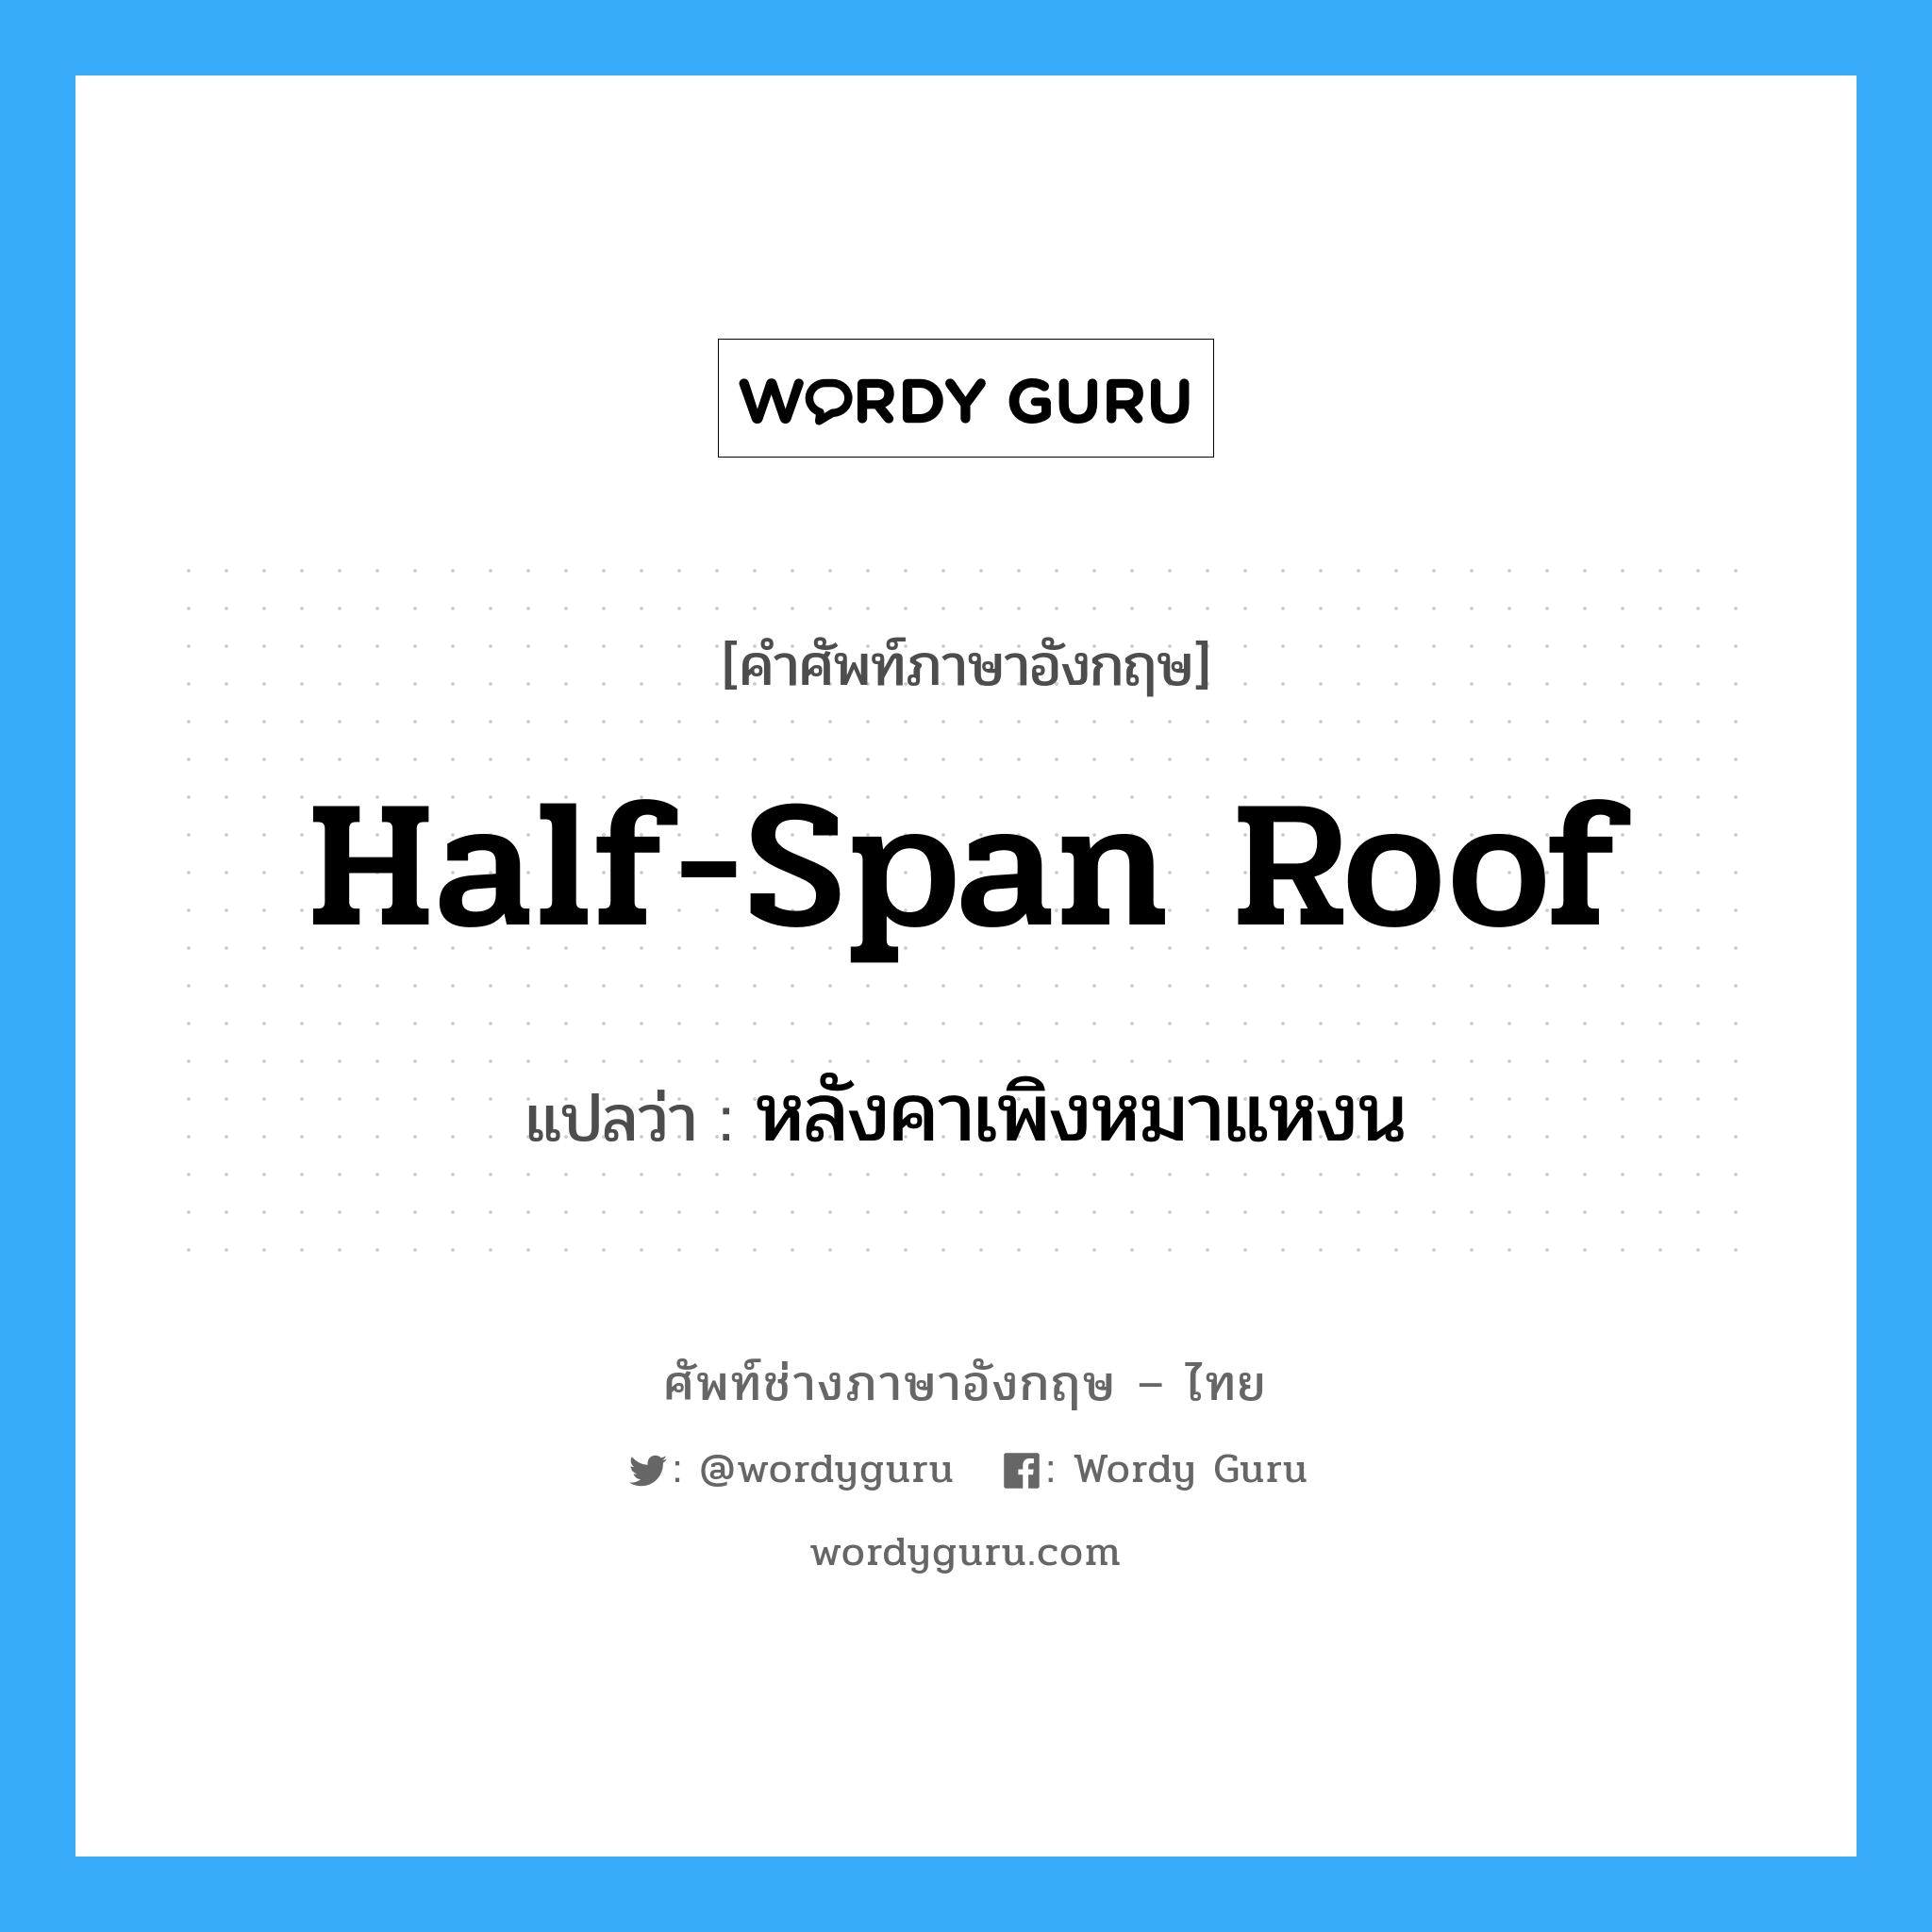 half-span roof แปลว่า?, คำศัพท์ช่างภาษาอังกฤษ - ไทย half-span roof คำศัพท์ภาษาอังกฤษ half-span roof แปลว่า หลังคาเพิงหมาแหงน